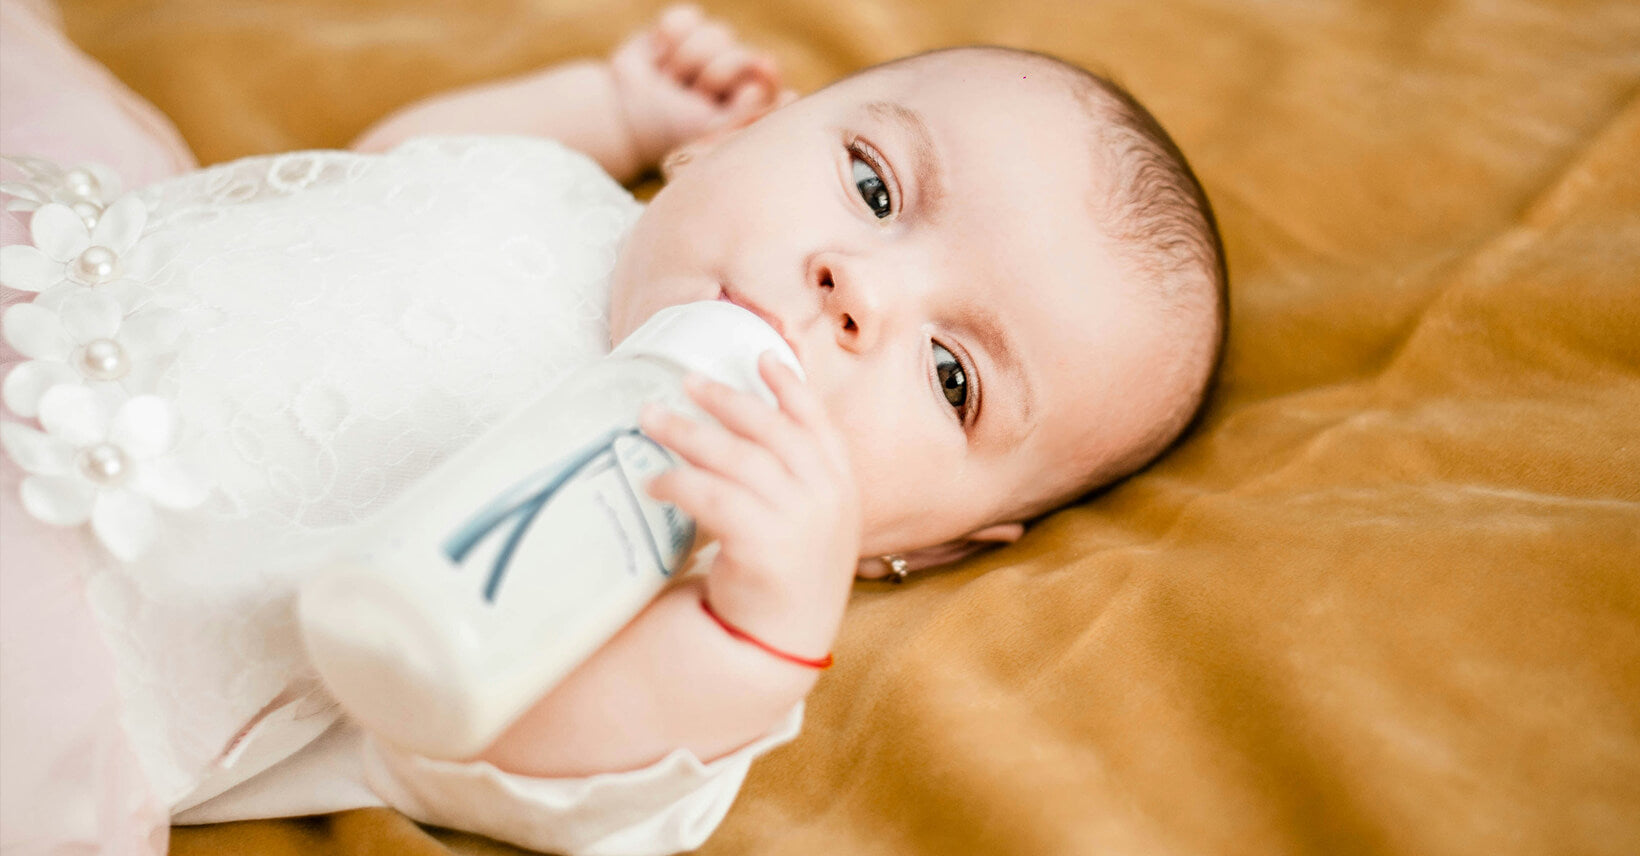 Breastfeeding, bottle-feeding, which is better?